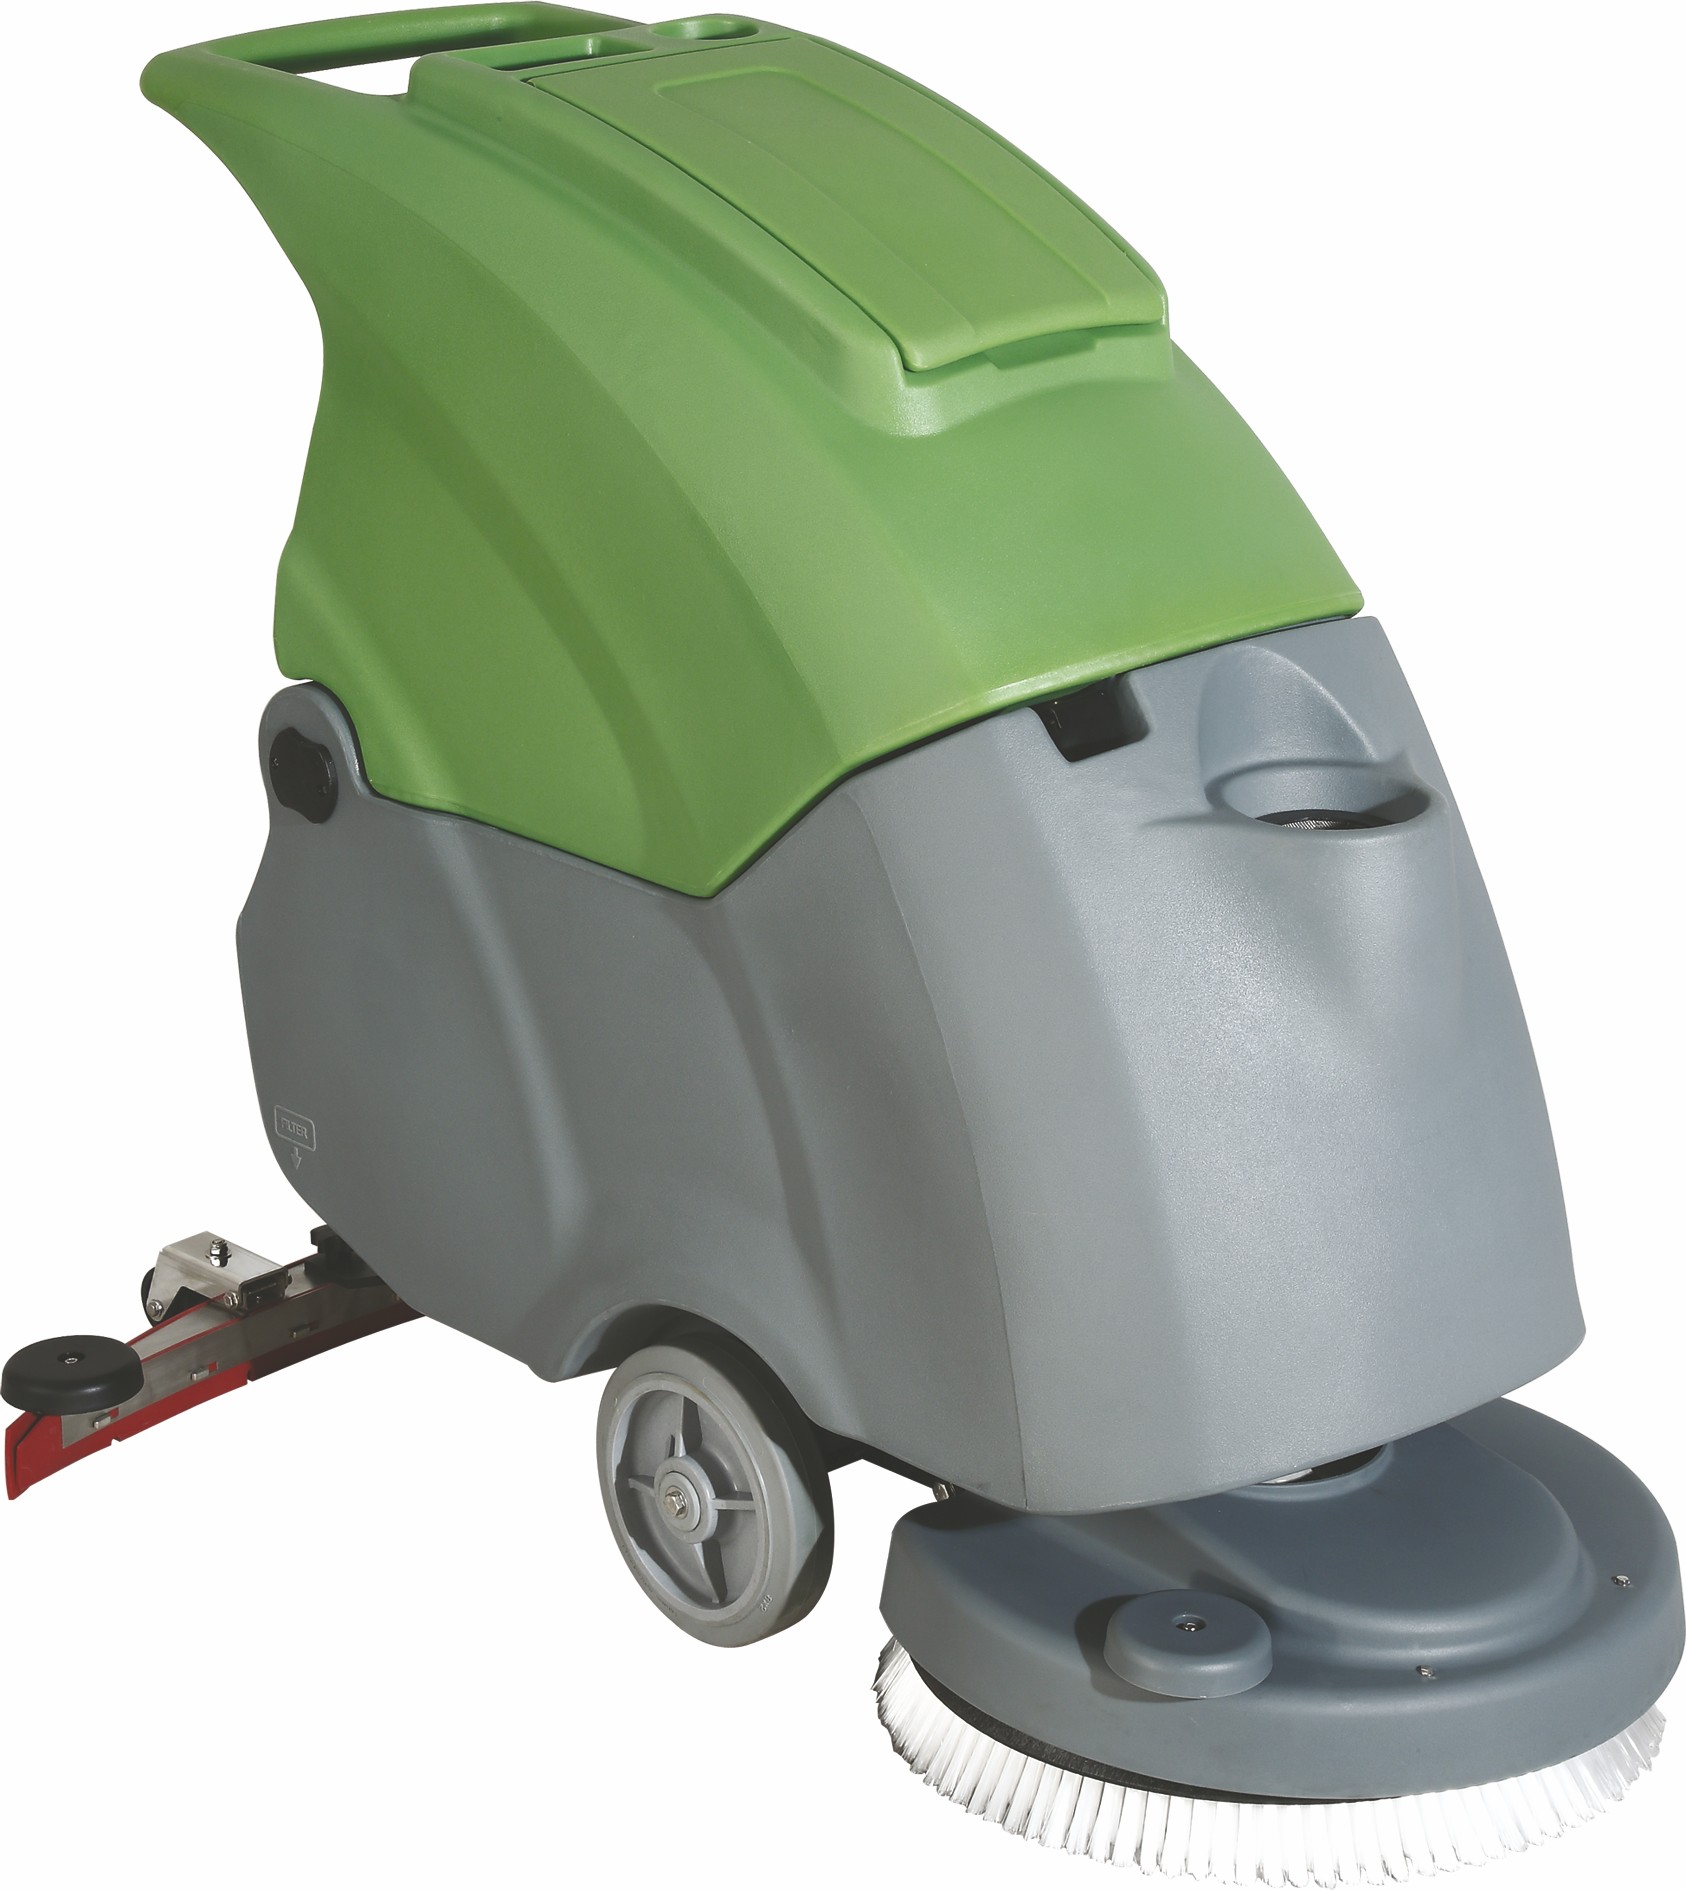  BC510 N手推式自動洗地機